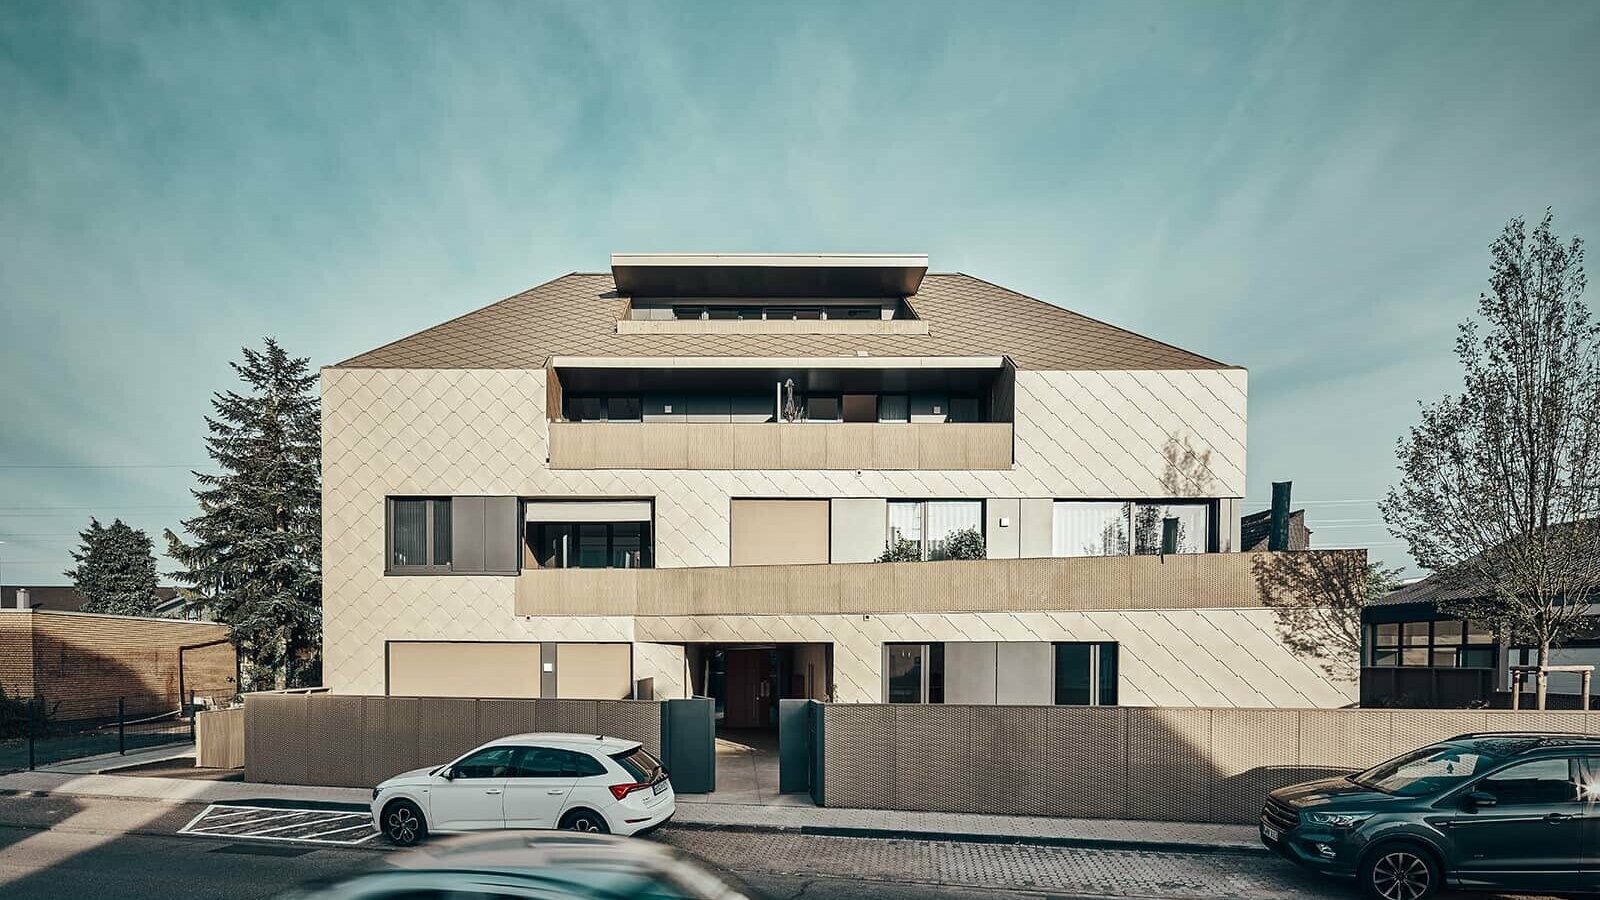 Frontansicht des Wohnhauses in einheitlicher Rautenschuppenhaut mit Fassadenrauten 44 x 44 von PREFA in der Sonderfarbe P.10 bronze.